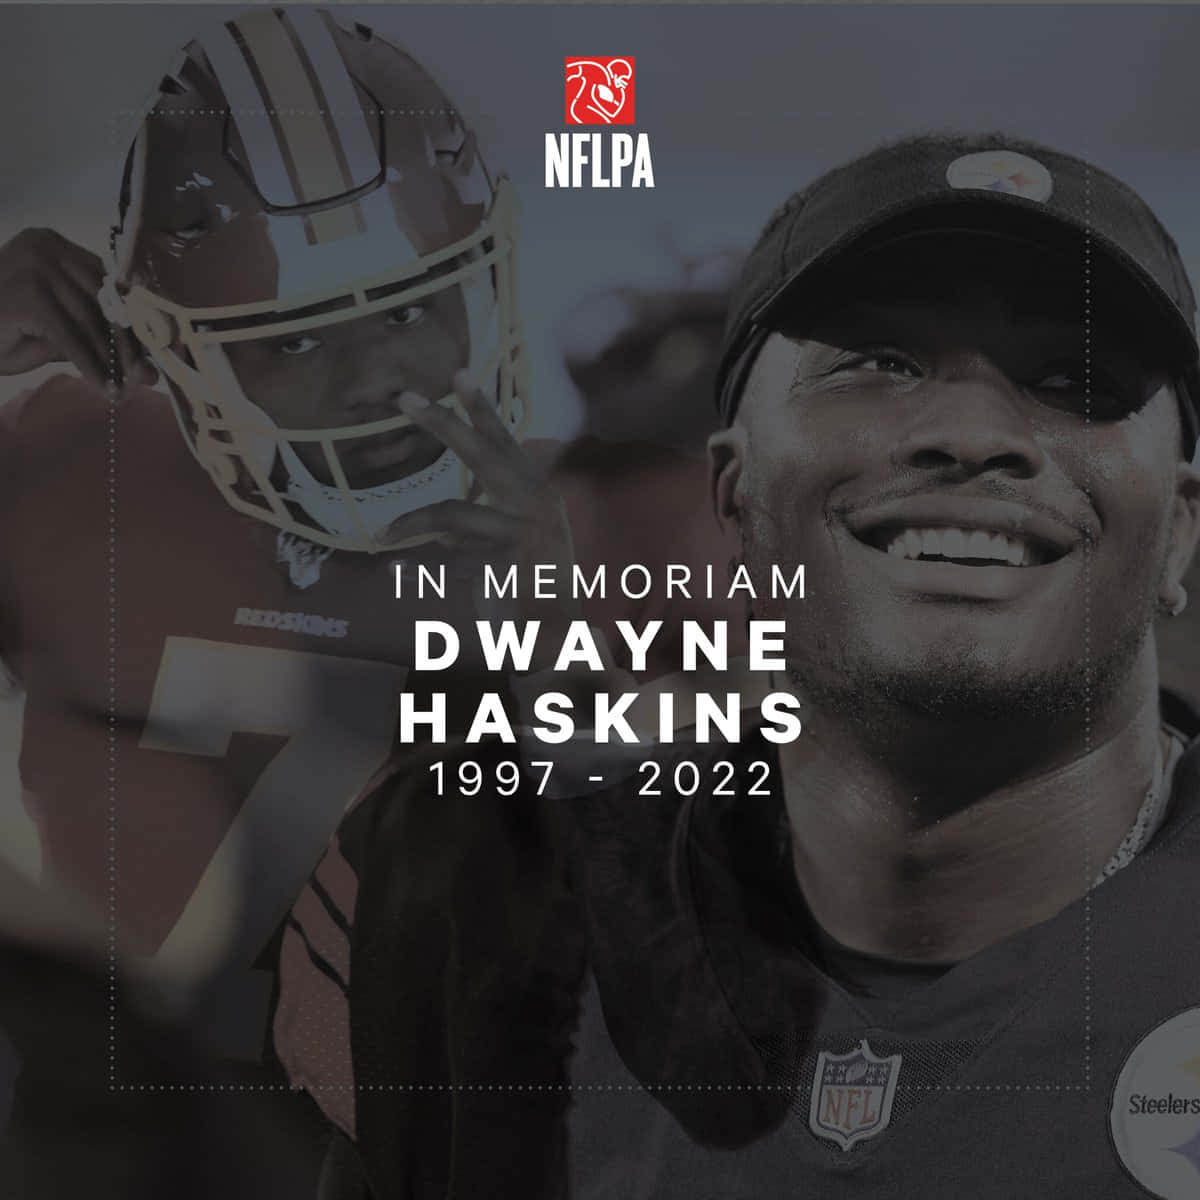 Dwaynehaskins Uppvisar En Imponerande Prestation Som Quarterback För Washington Football Team. Wallpaper